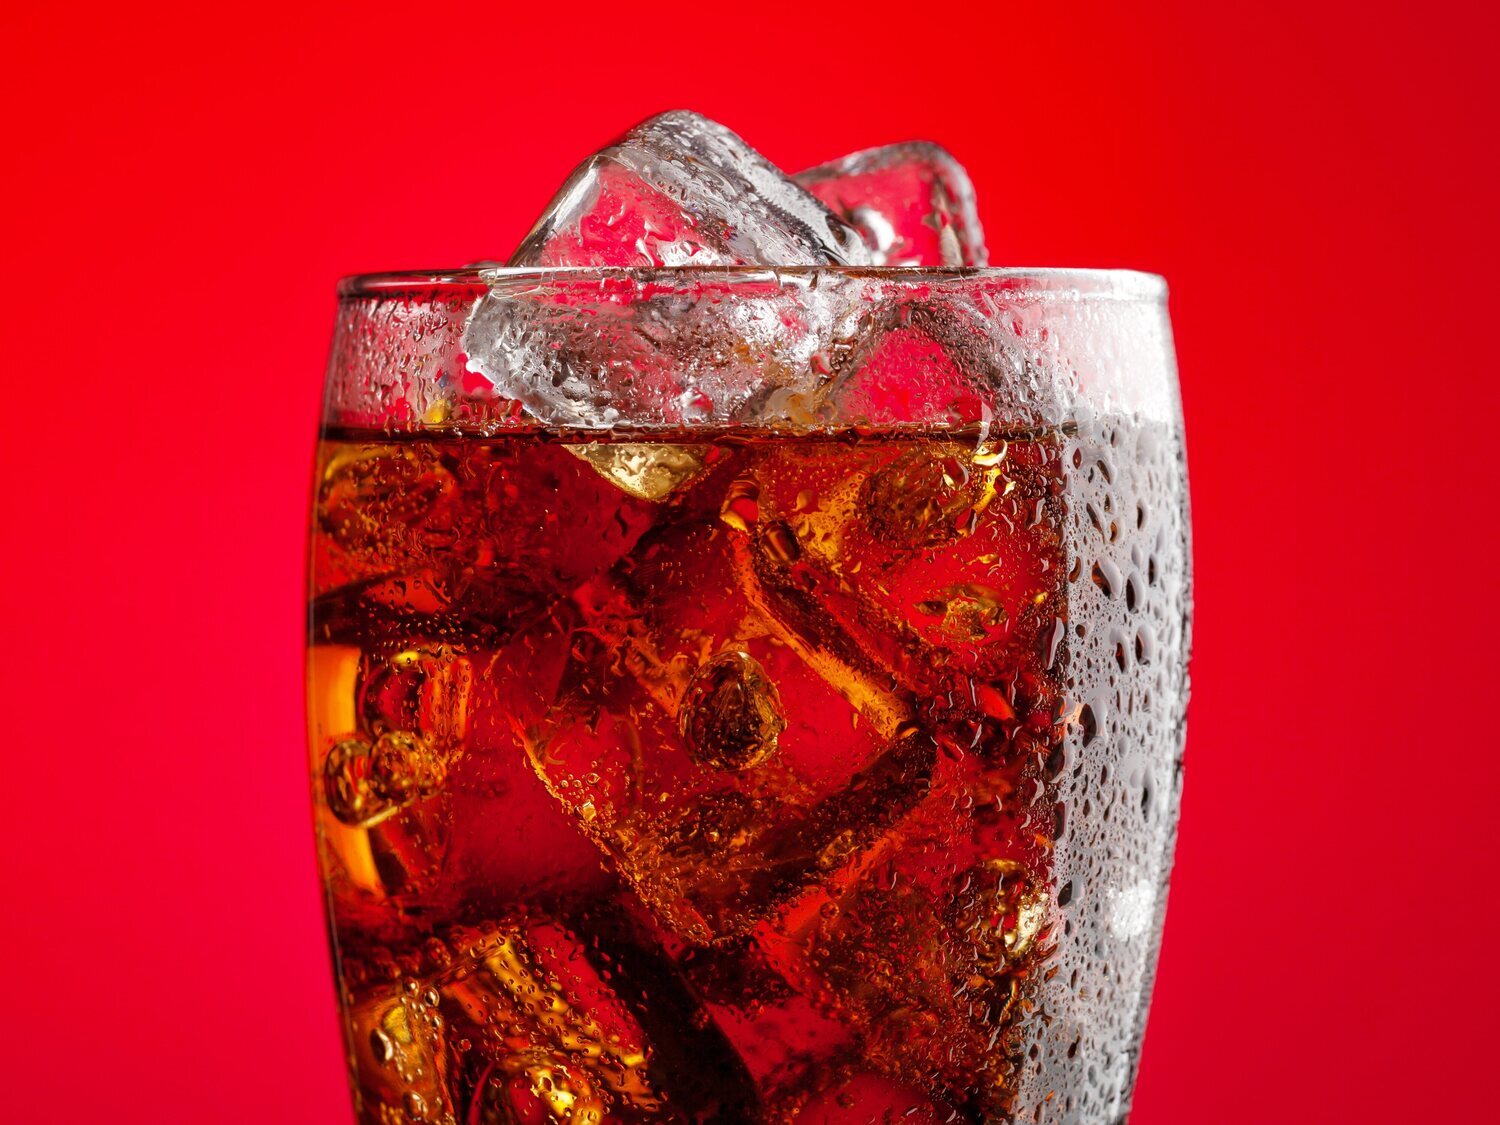 El truco que triunfa en redes para elaborar "Coca-Cola saludable" en casa